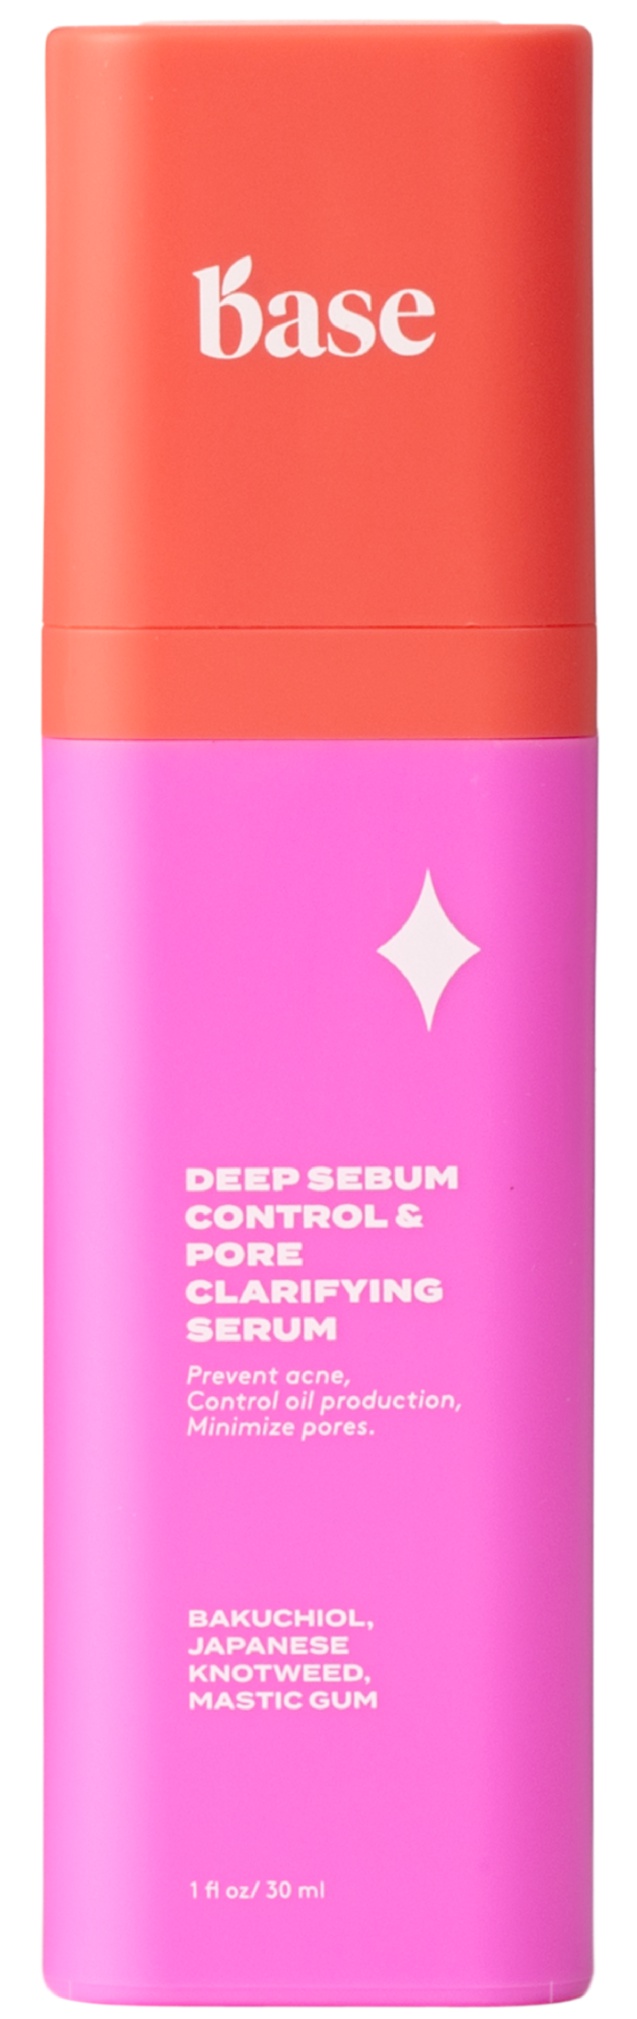 Base Deep Sebum Control & Pore Clarifying Serum